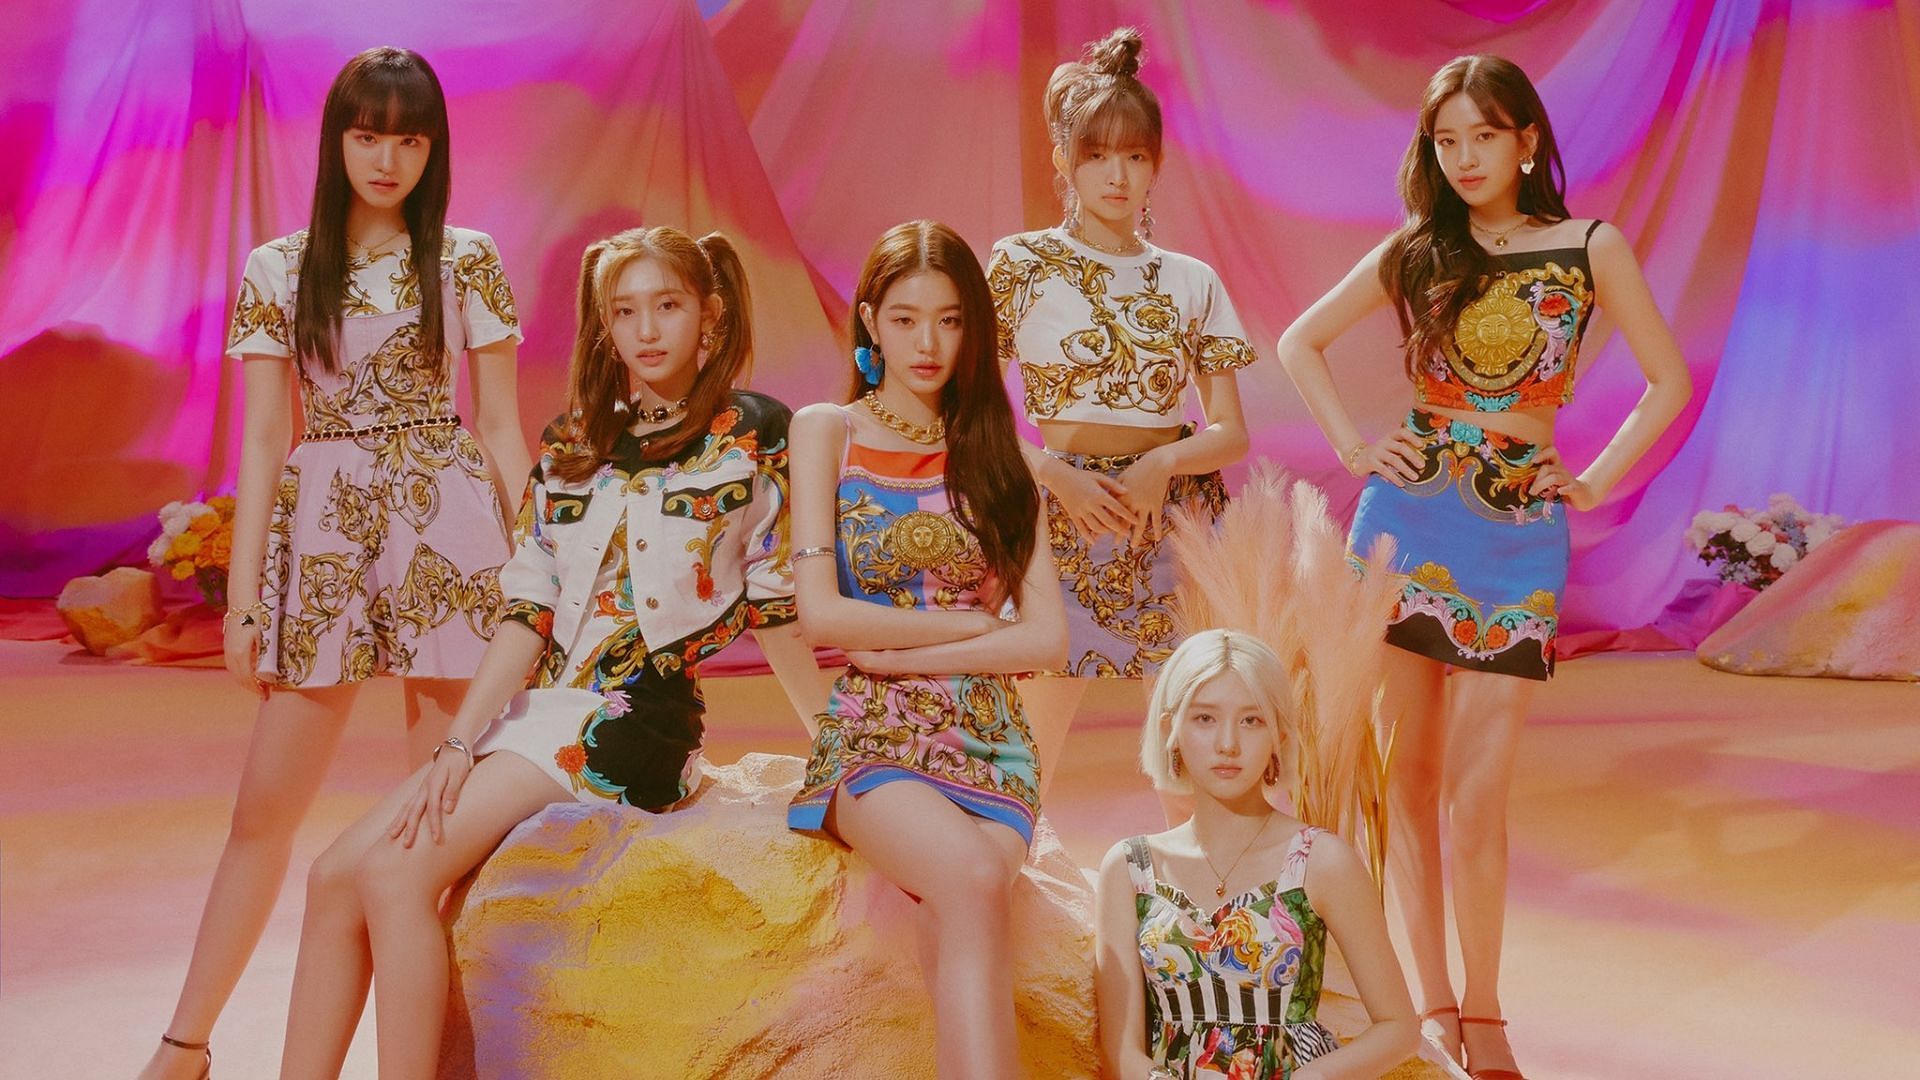 A still of the K-pop girl group IVE (Image via Twitter/@IVEstarship)